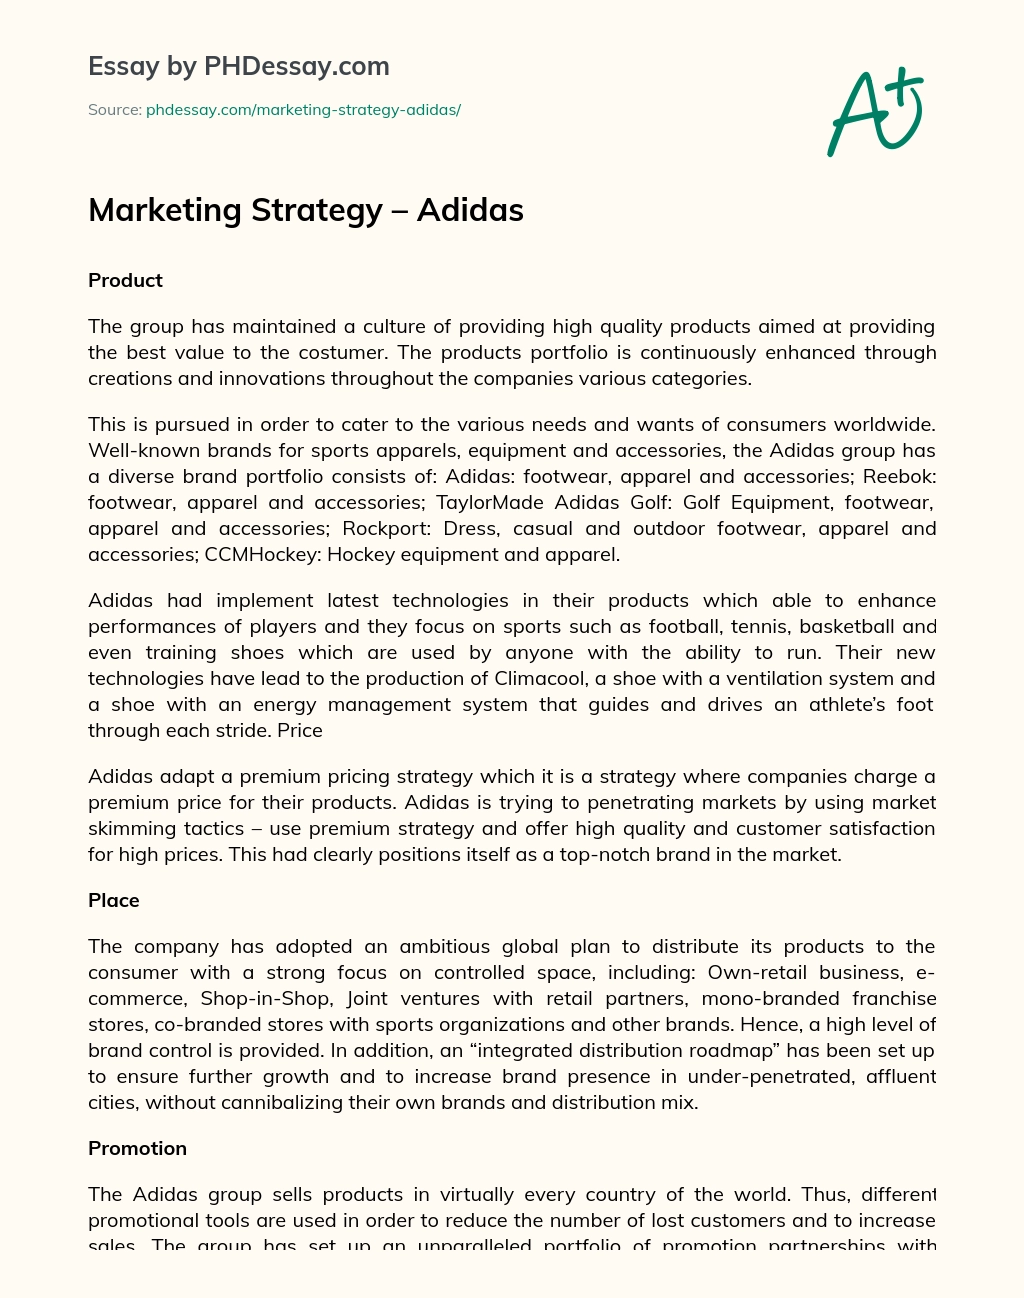 Marketing Strategy – Adidas essay